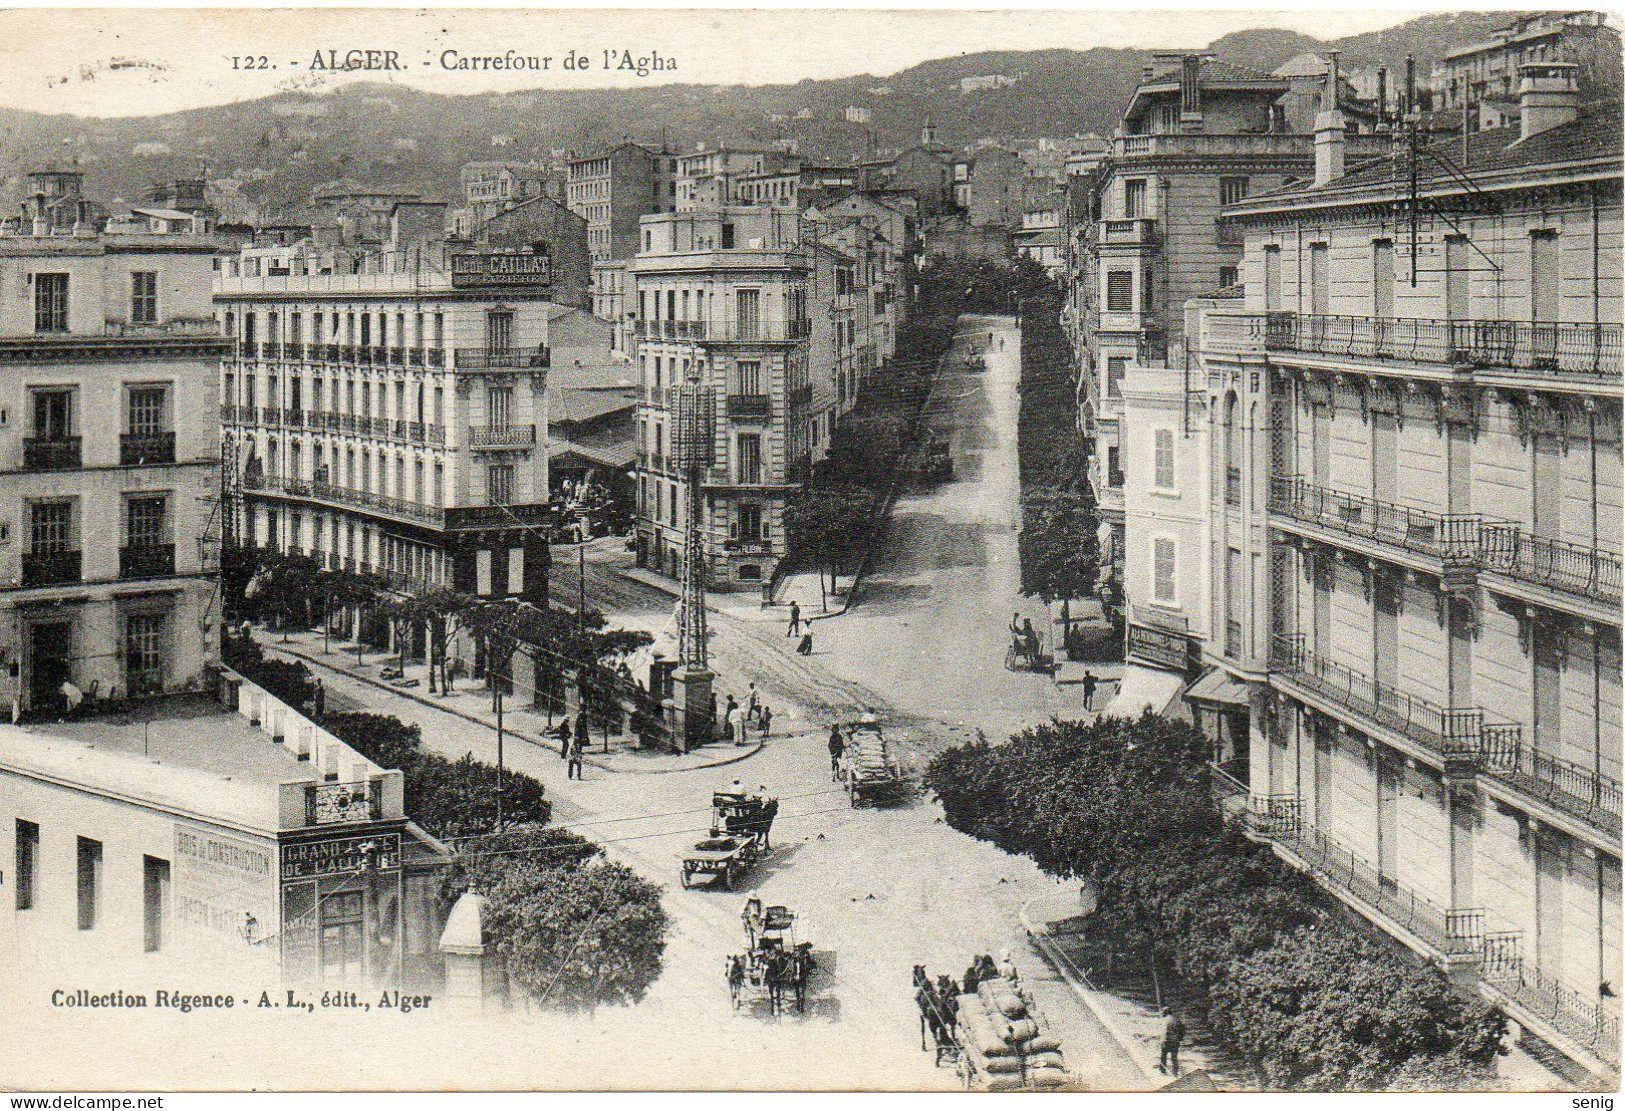 ALGERIE - ALGER - 122 - Carrefour De L'Agha - Collection Régence A. L. édit. Alger (Leroux) - - Algiers